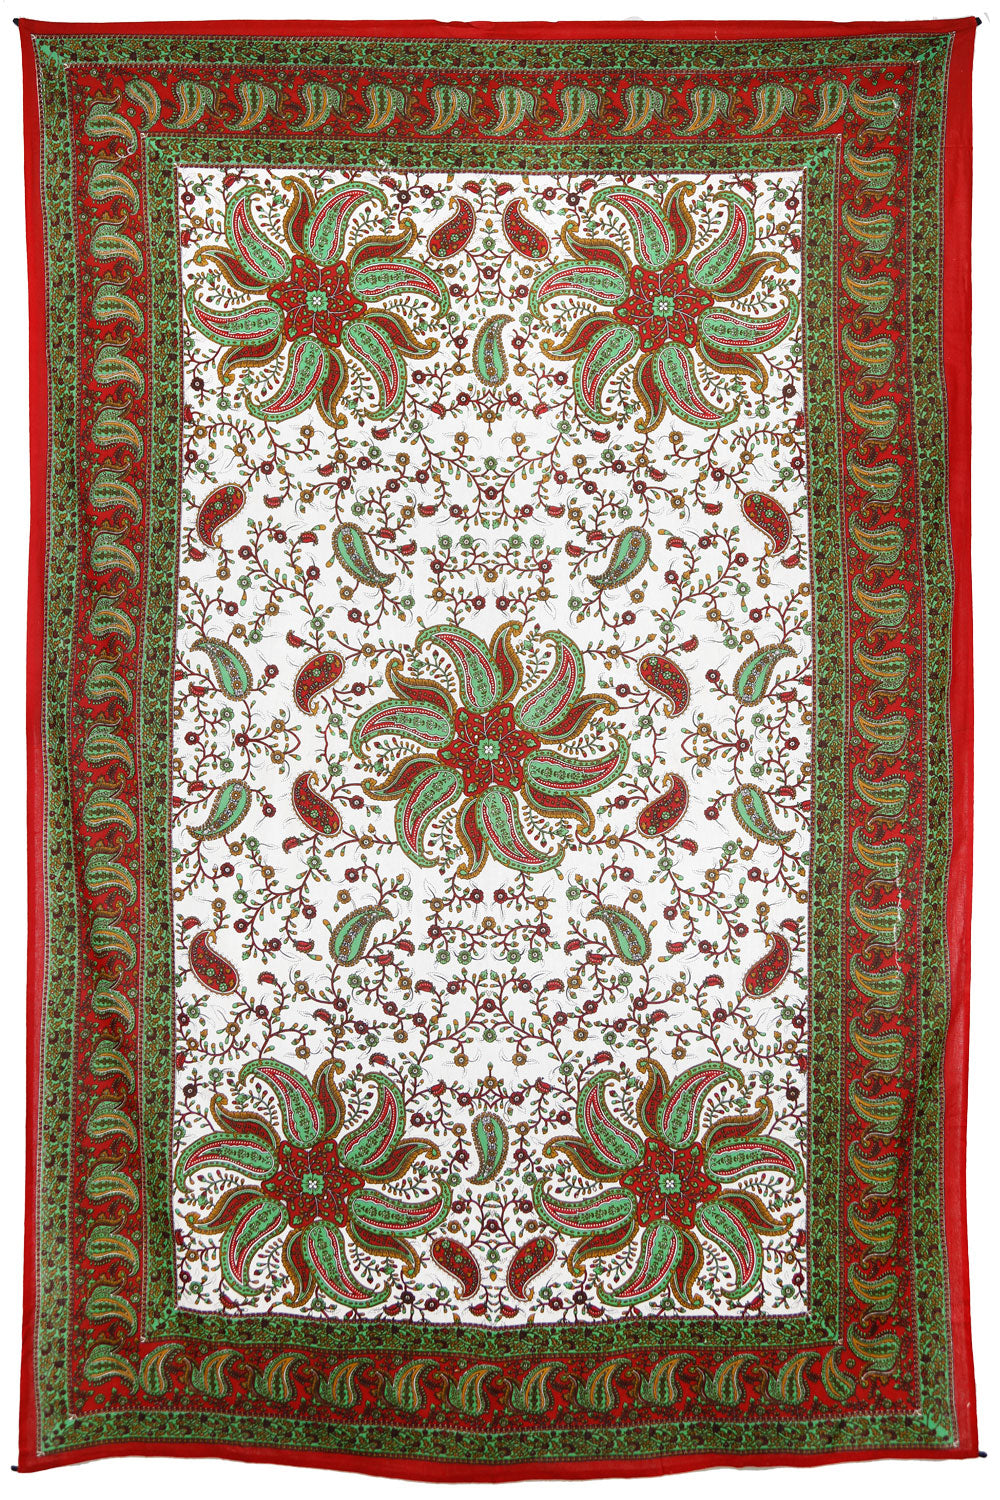 Red/Green Pinwheel Tapestry